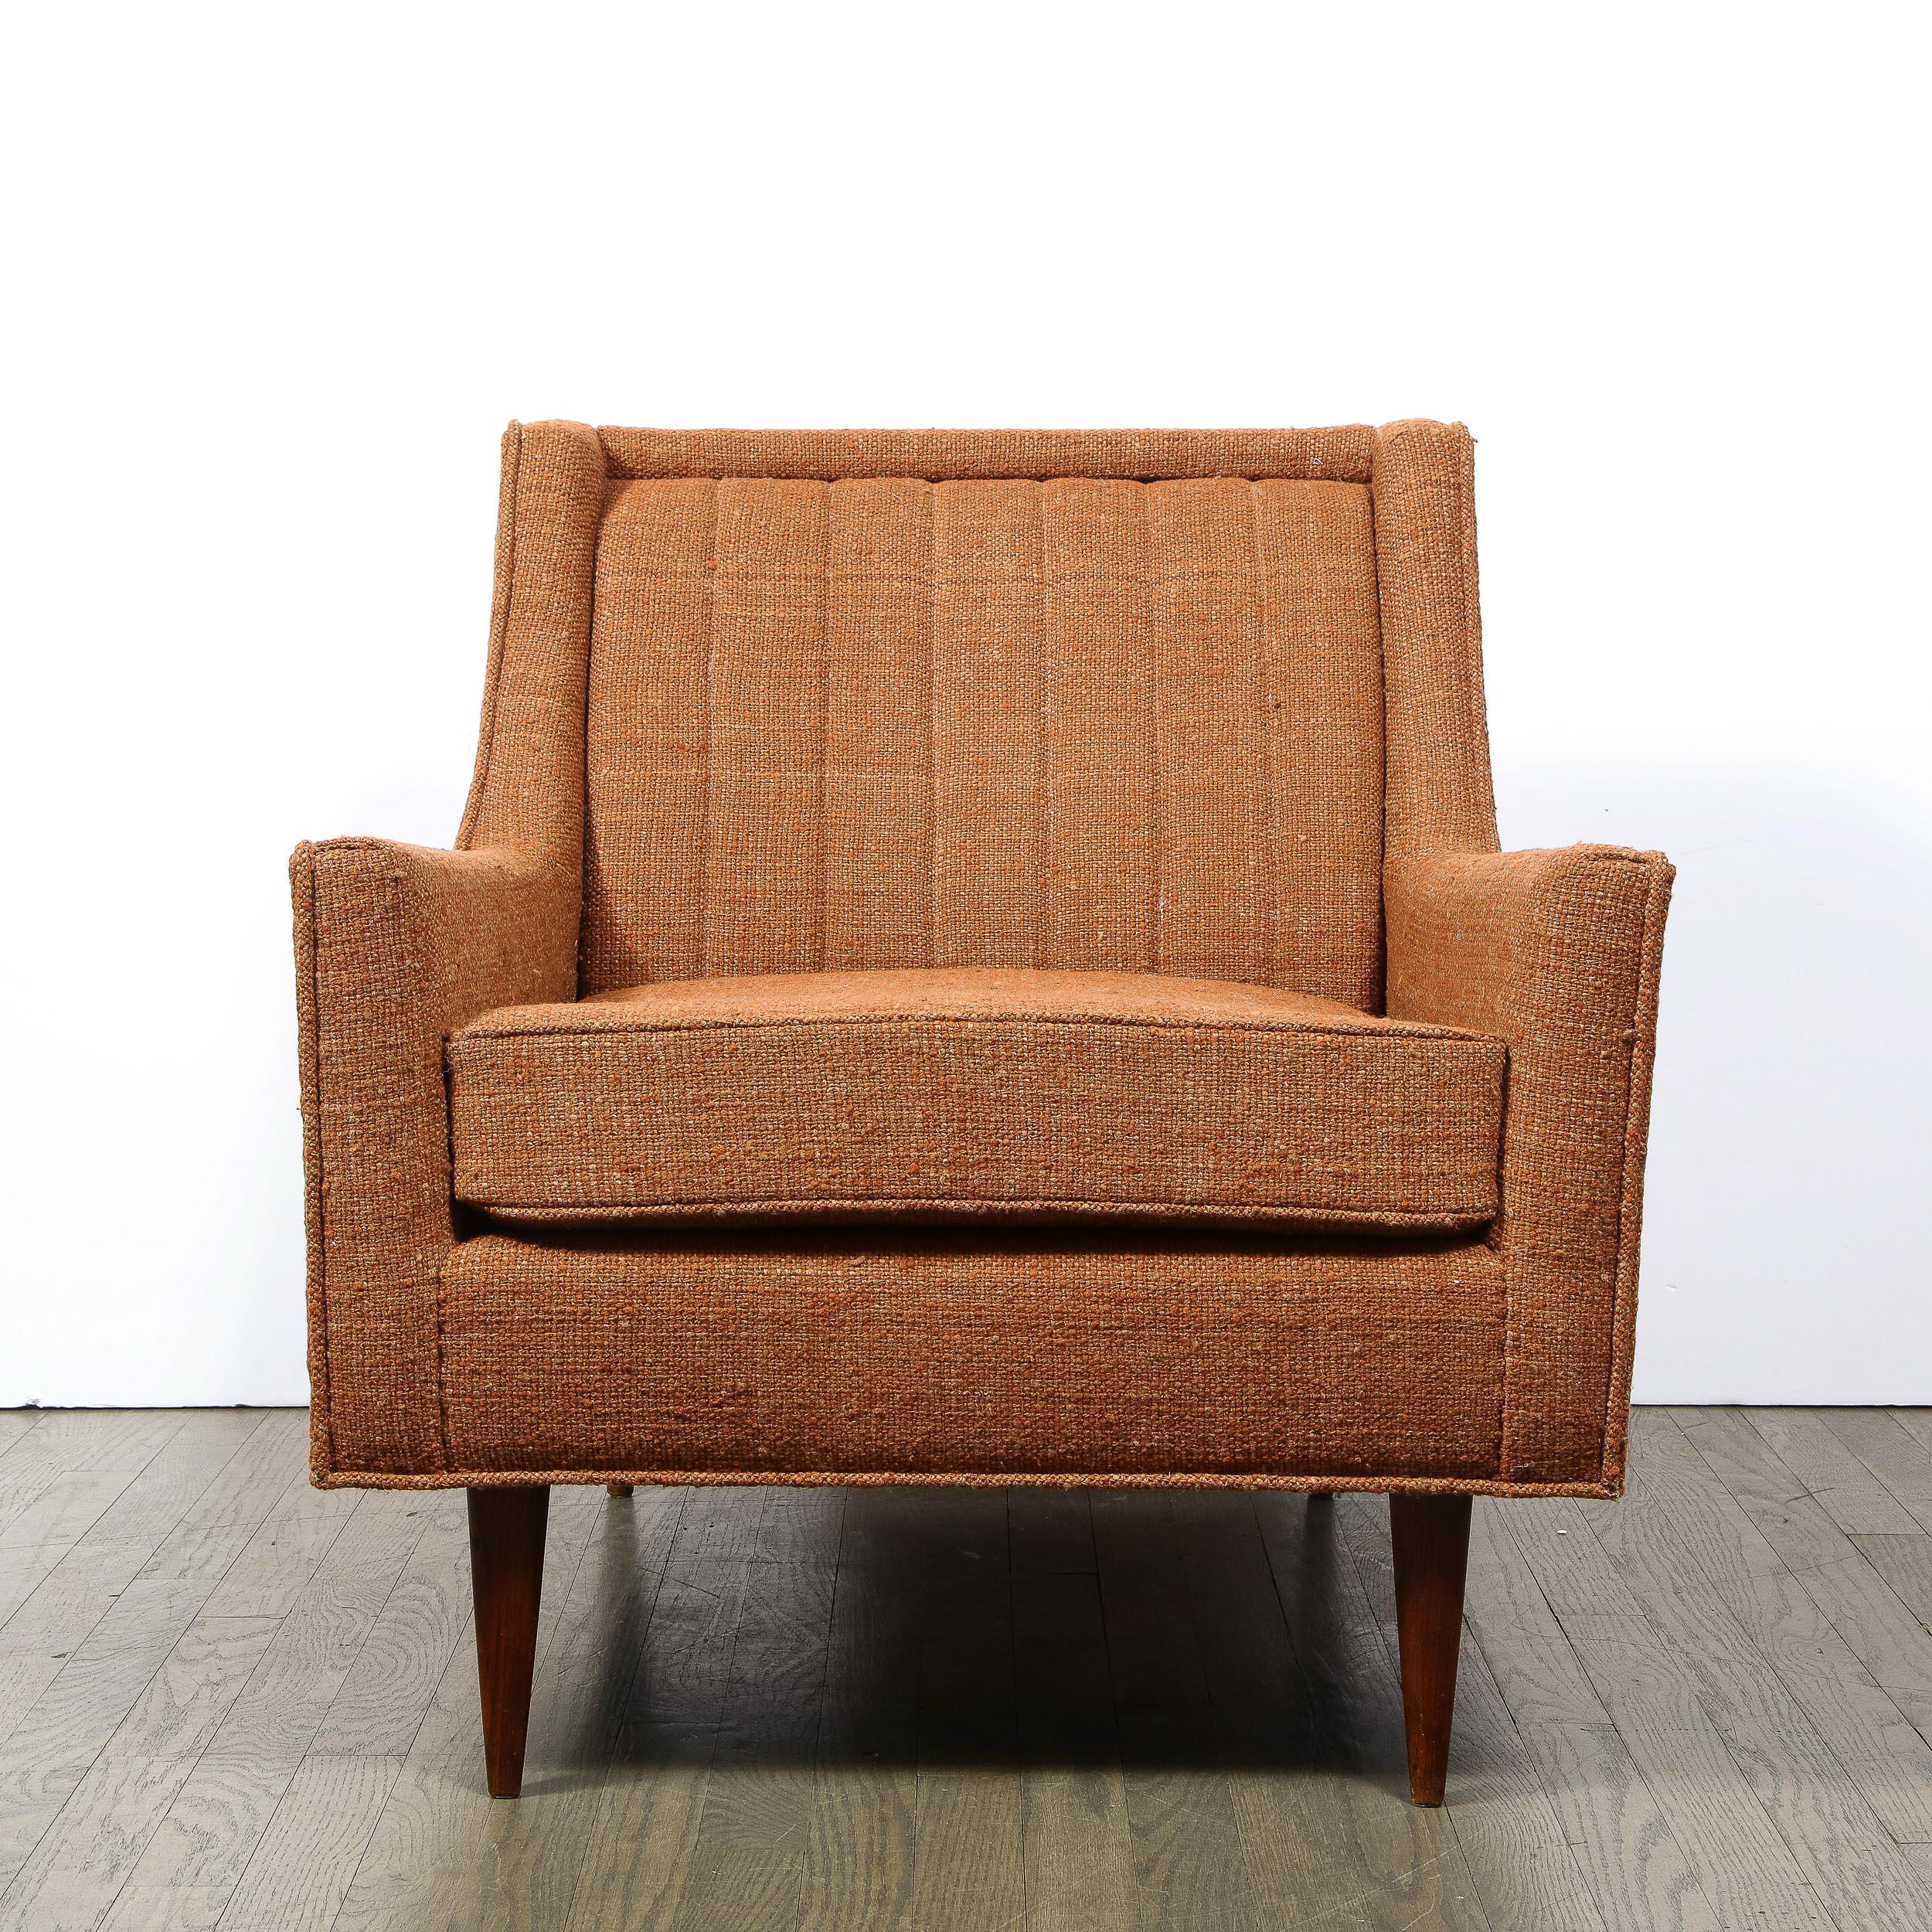 Dieser raffinierte Mid-Century Modern Sessel wurde um 1950 in den Vereinigten Staaten hergestellt. Das auf konischen Beinen stehende Möbelstück bietet eine Fülle schöner Details, wie z. B. Rinnendetails auf der subtilen Schattenbox-Rückseite und